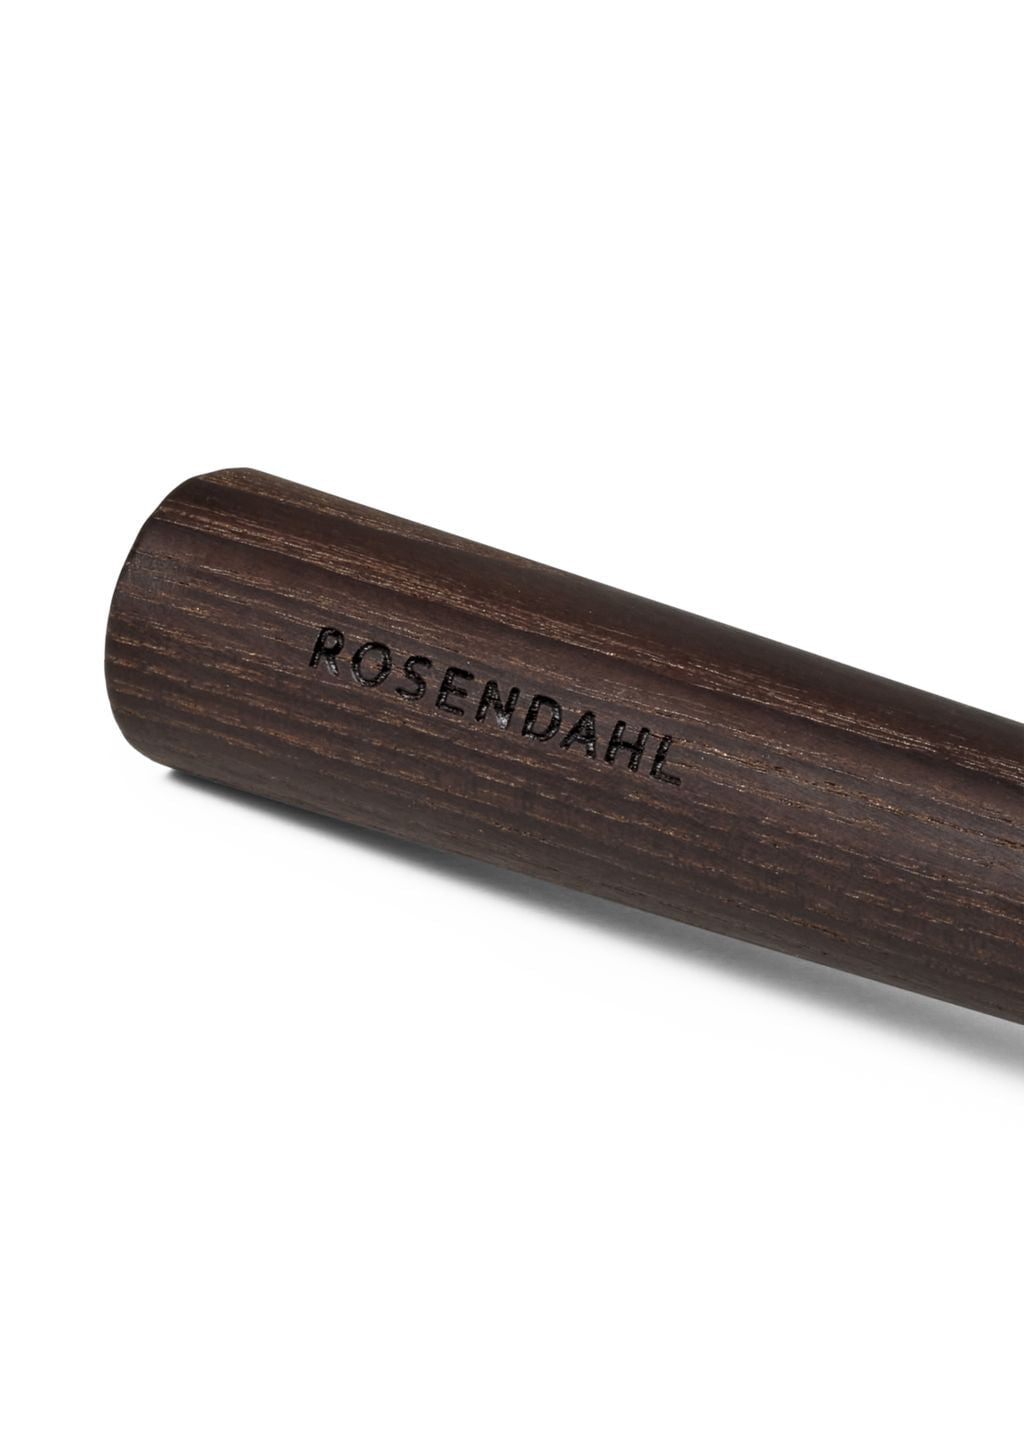 Rosendahl Rå whisk, thermo cendre / pistolet métallique